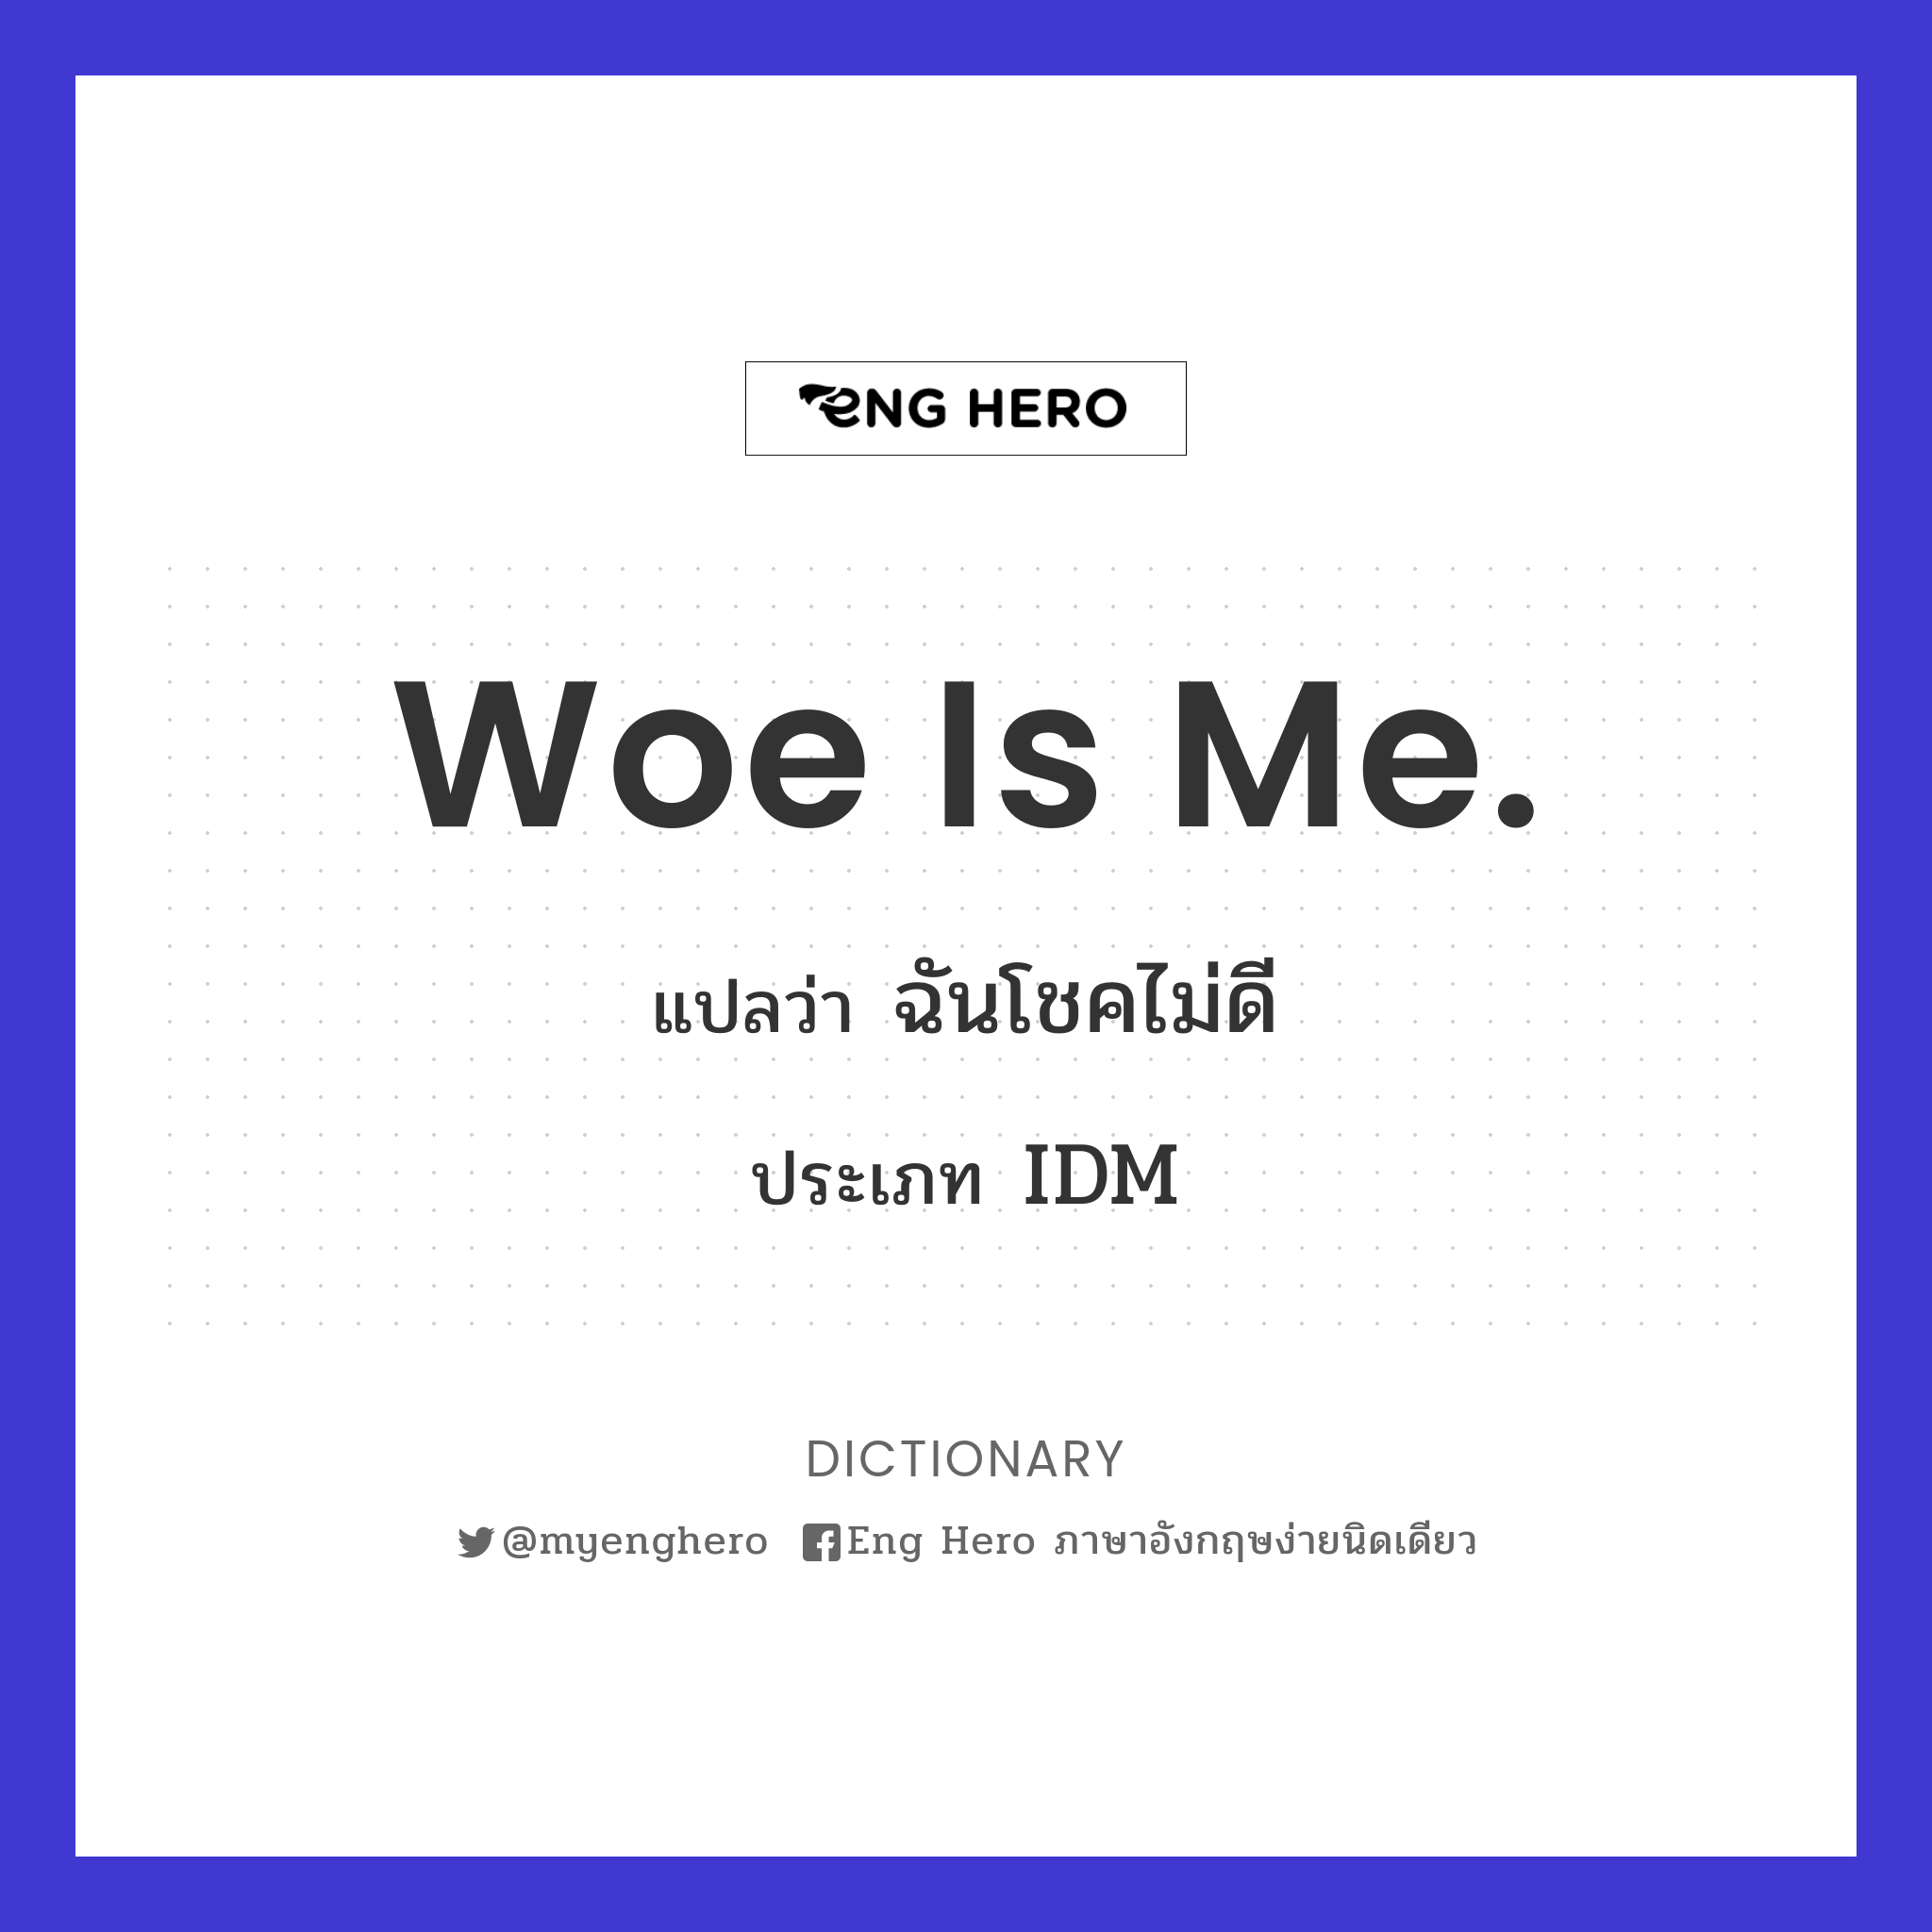 Woe is me.